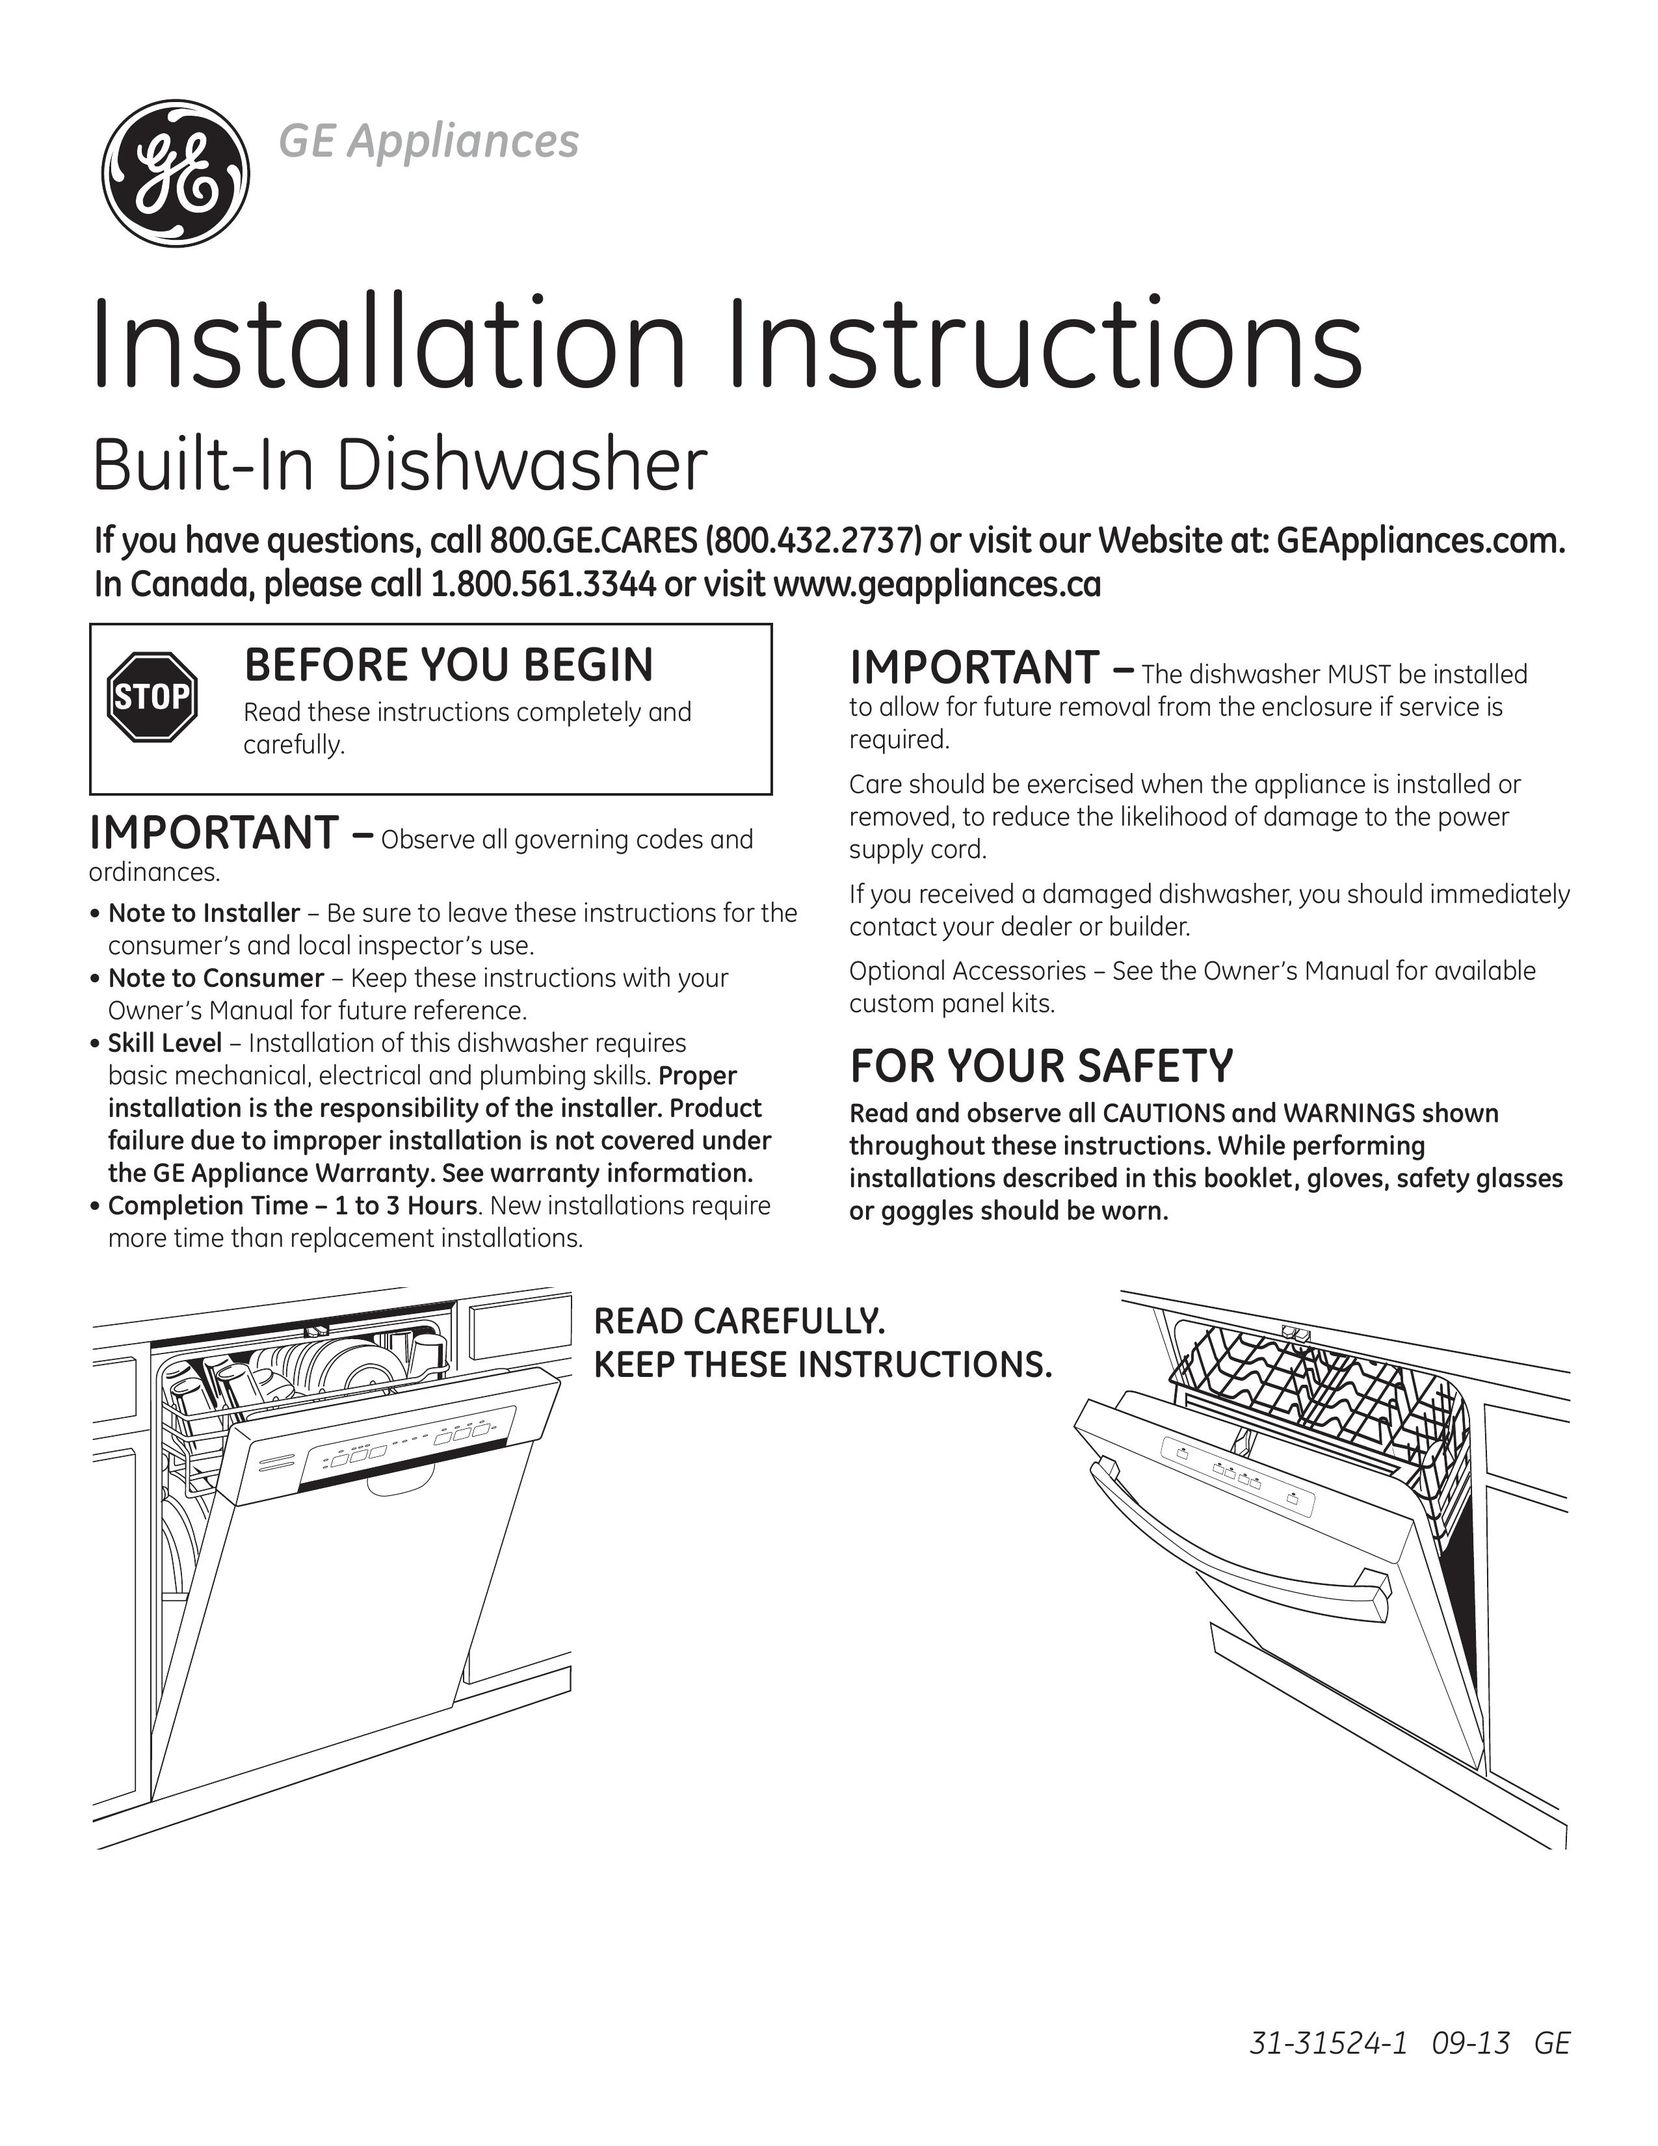 GE 31-31524-1 09-12 GE Dishwasher User Manual